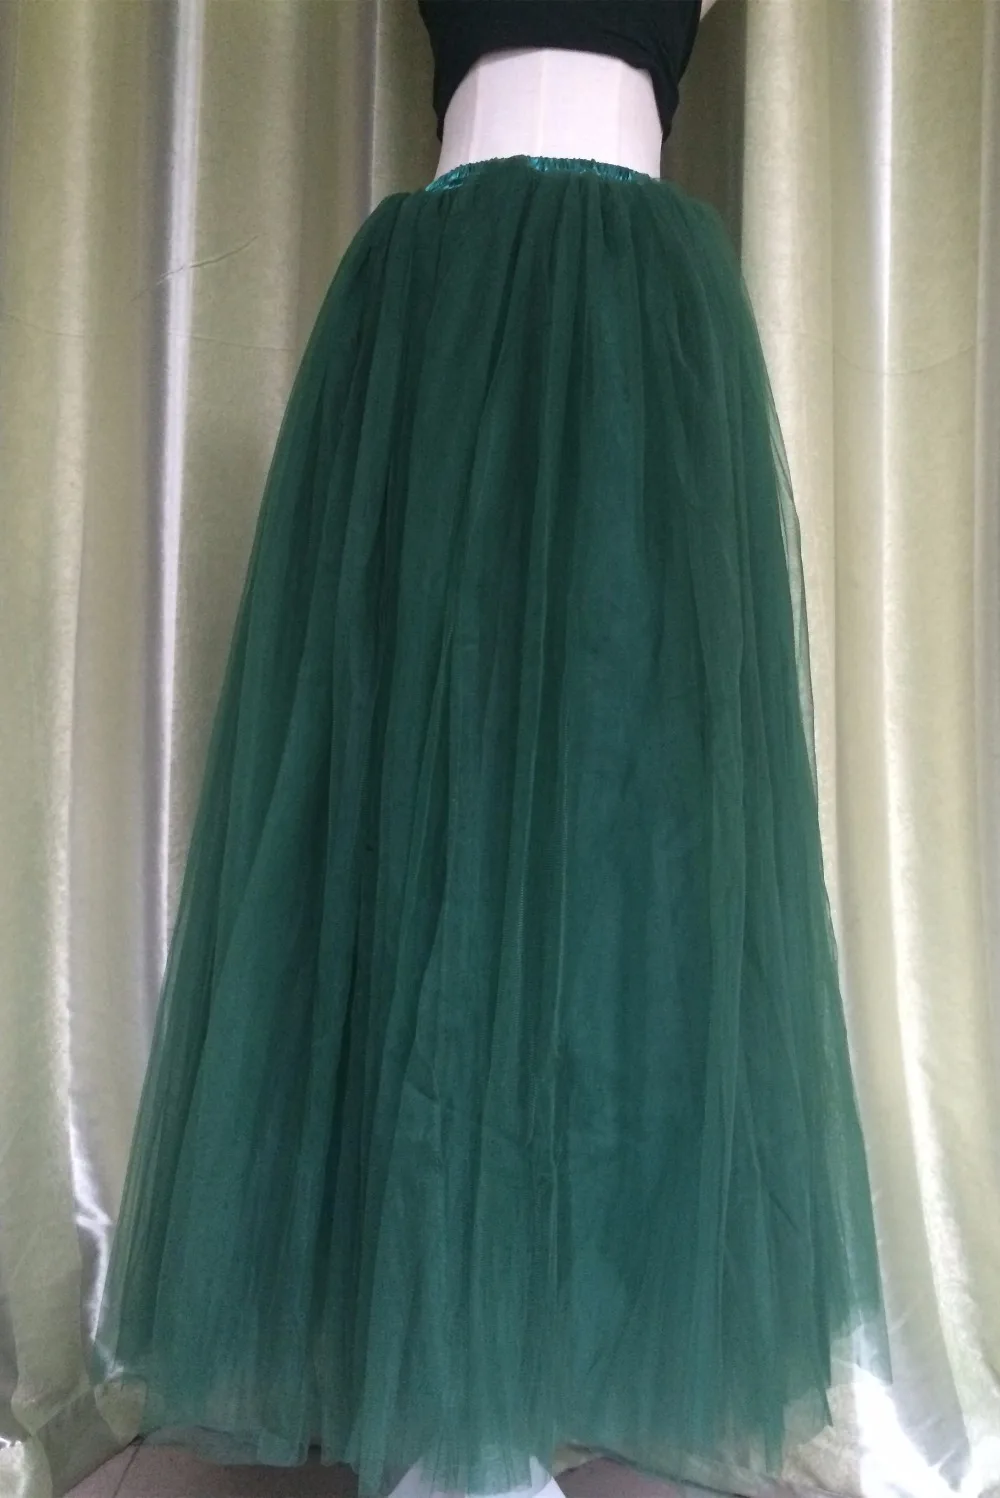 Princesa 7 Layers 39 mujeres largas falda de tul verde boda de Ball vestido el tamaño por encargo Color Jupe Longue _ - AliExpress Mobile